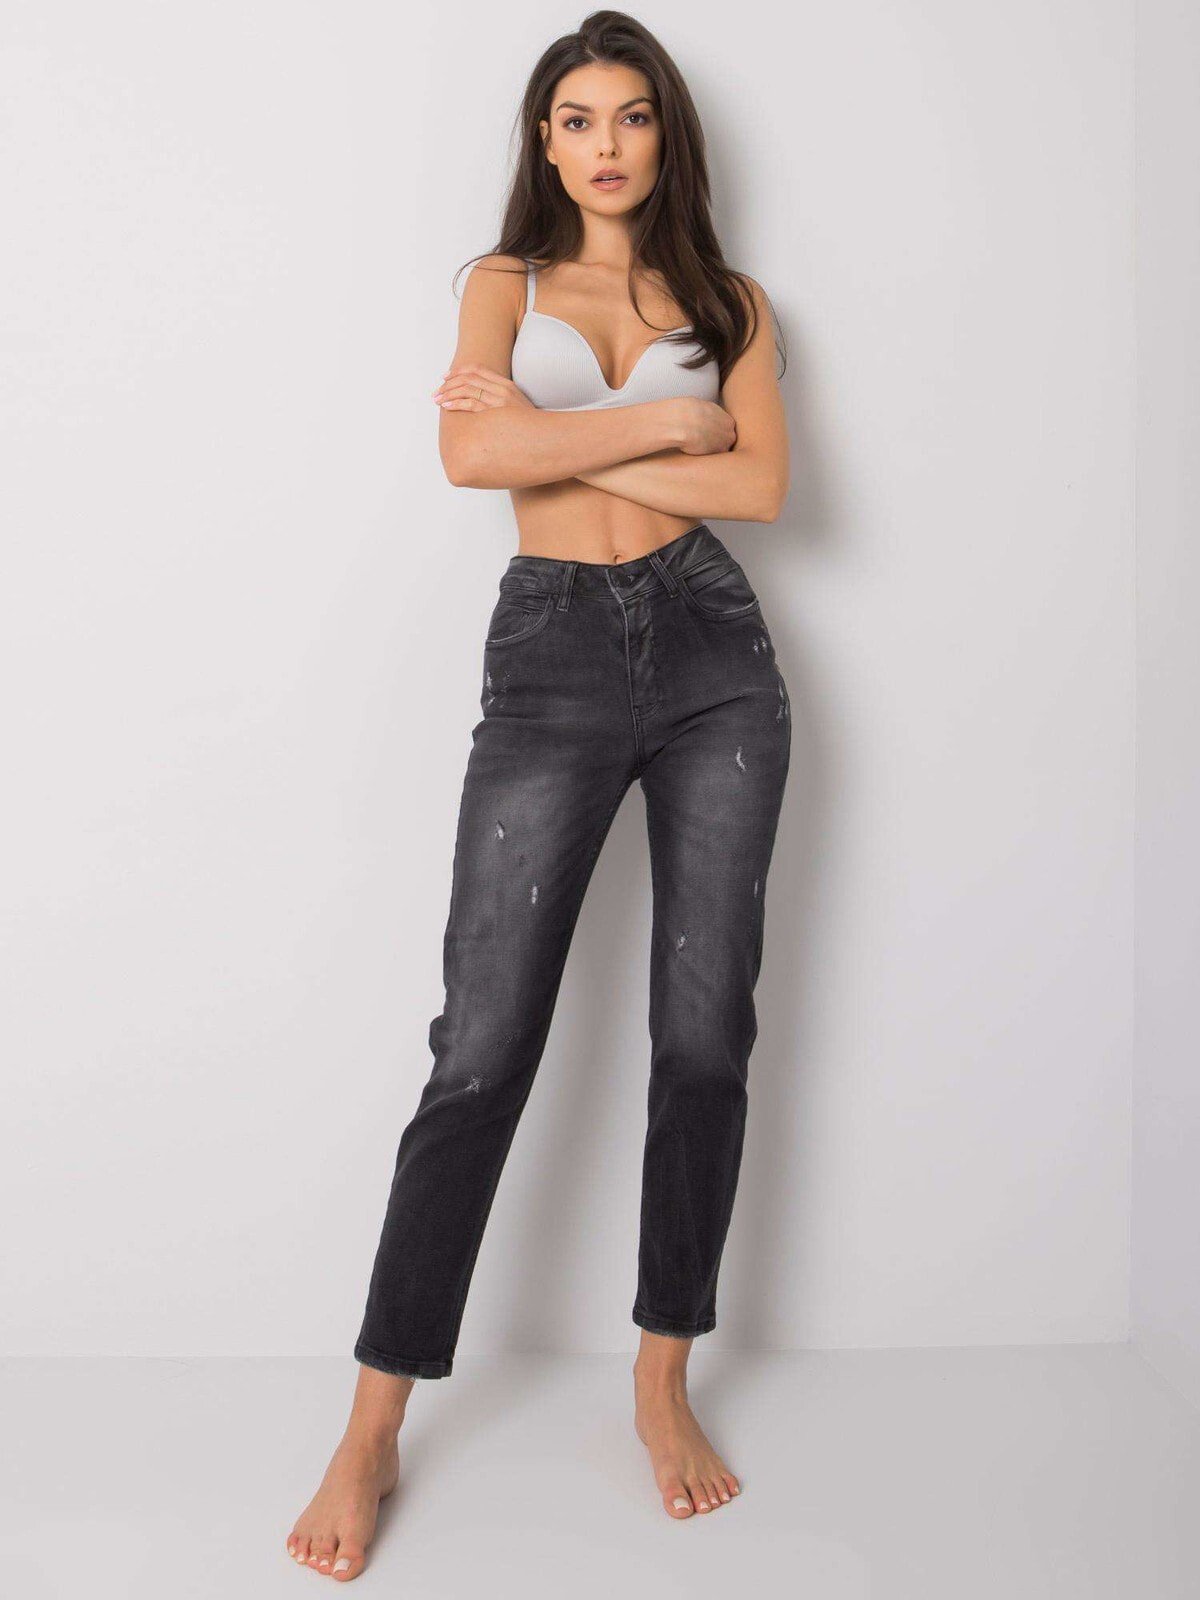 Женские джинсы прямого кроя Factory Price состаренные, темно-серый